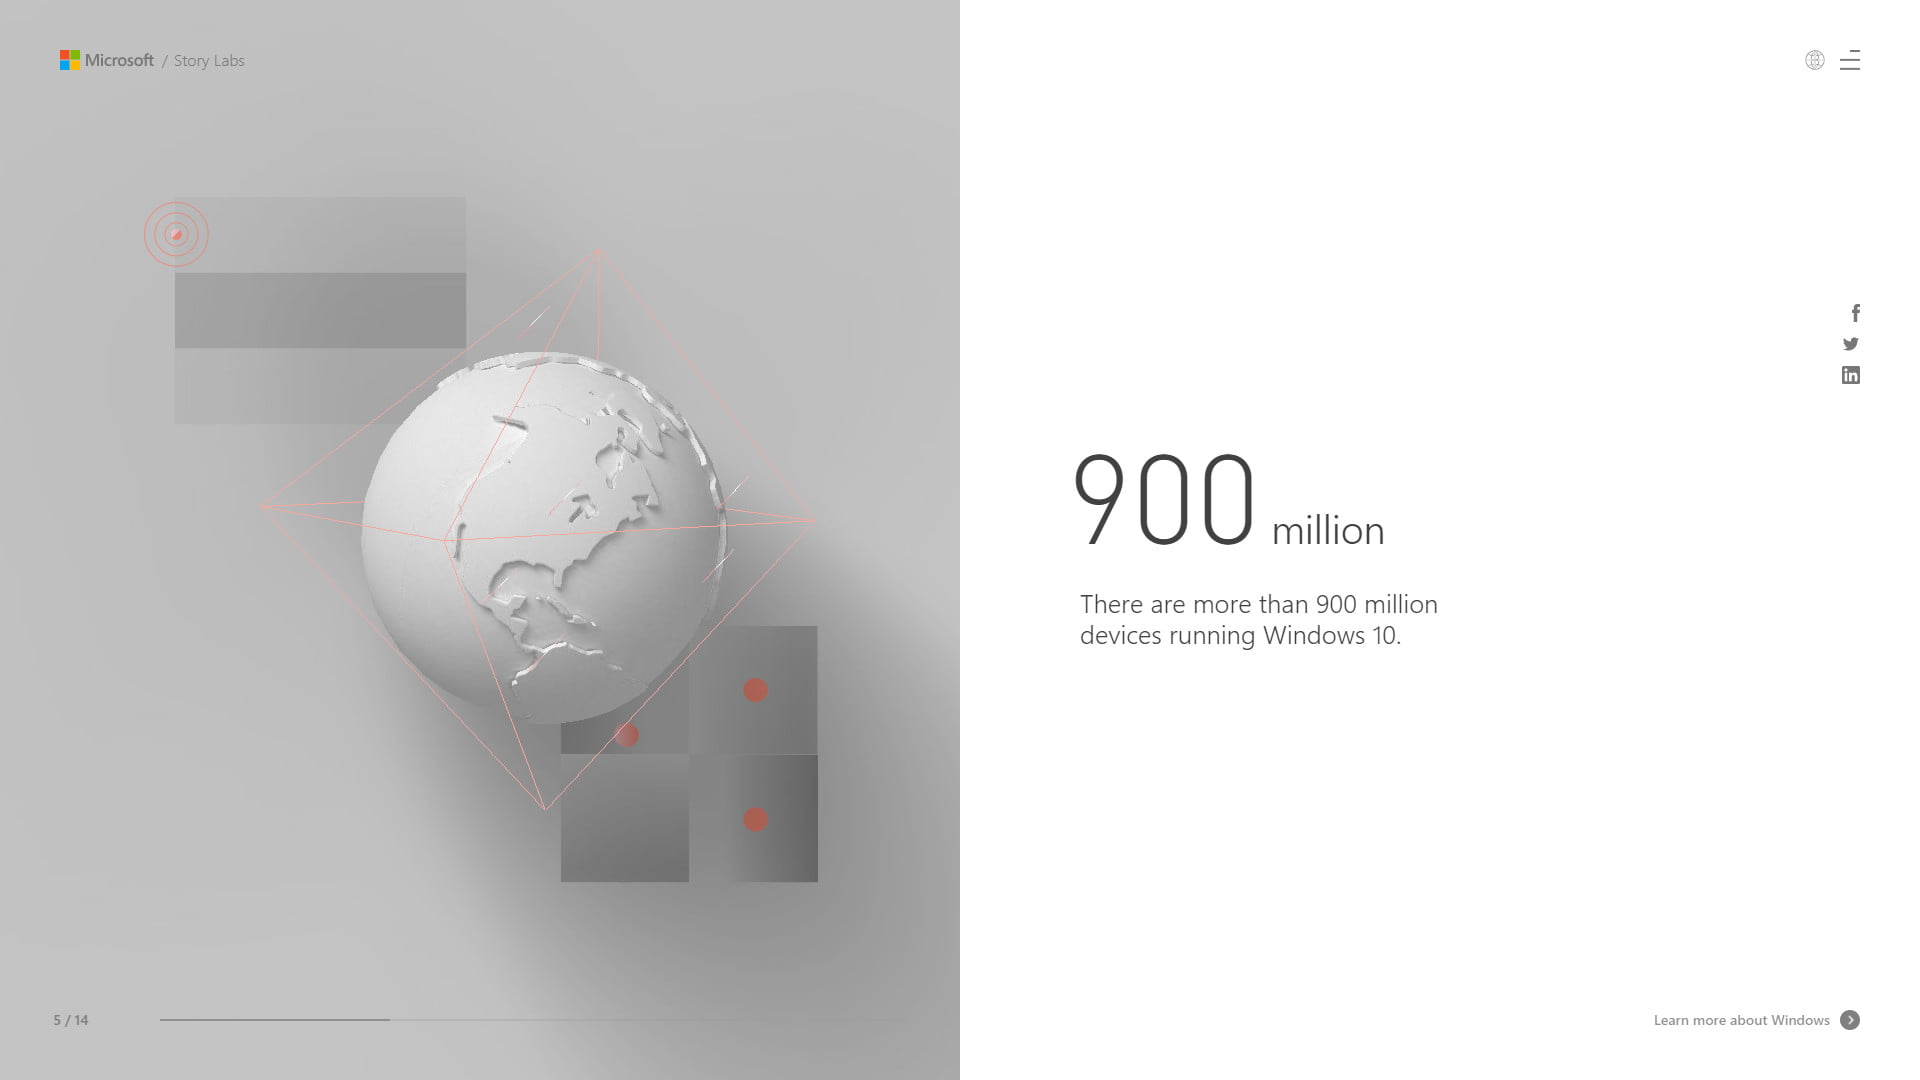 ويندوز 10 يستخدم على أكثر من 900 مليون جهاز   البوابة العربية للأخبار التقنية